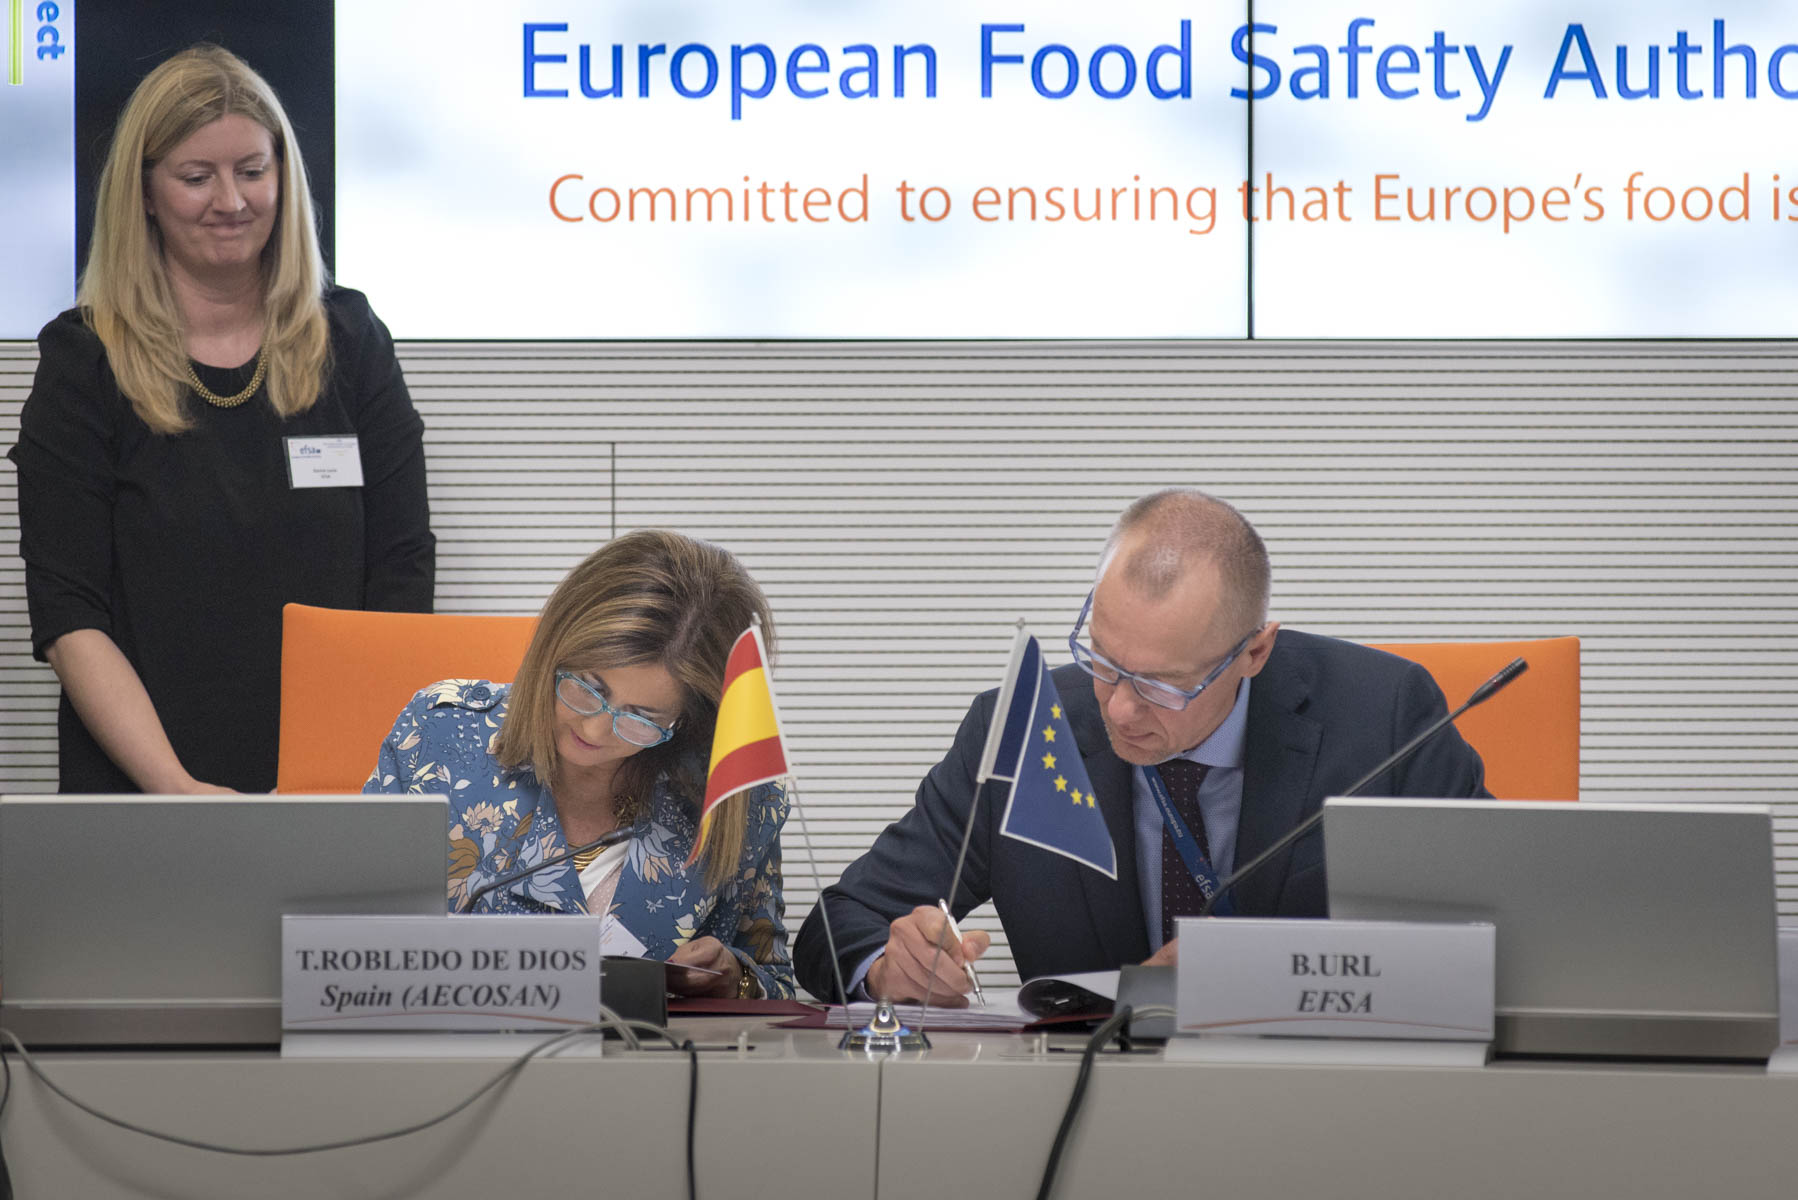 Convenio de la Autoridad Europea de Seguridad Alimentaria y la AECOSAN